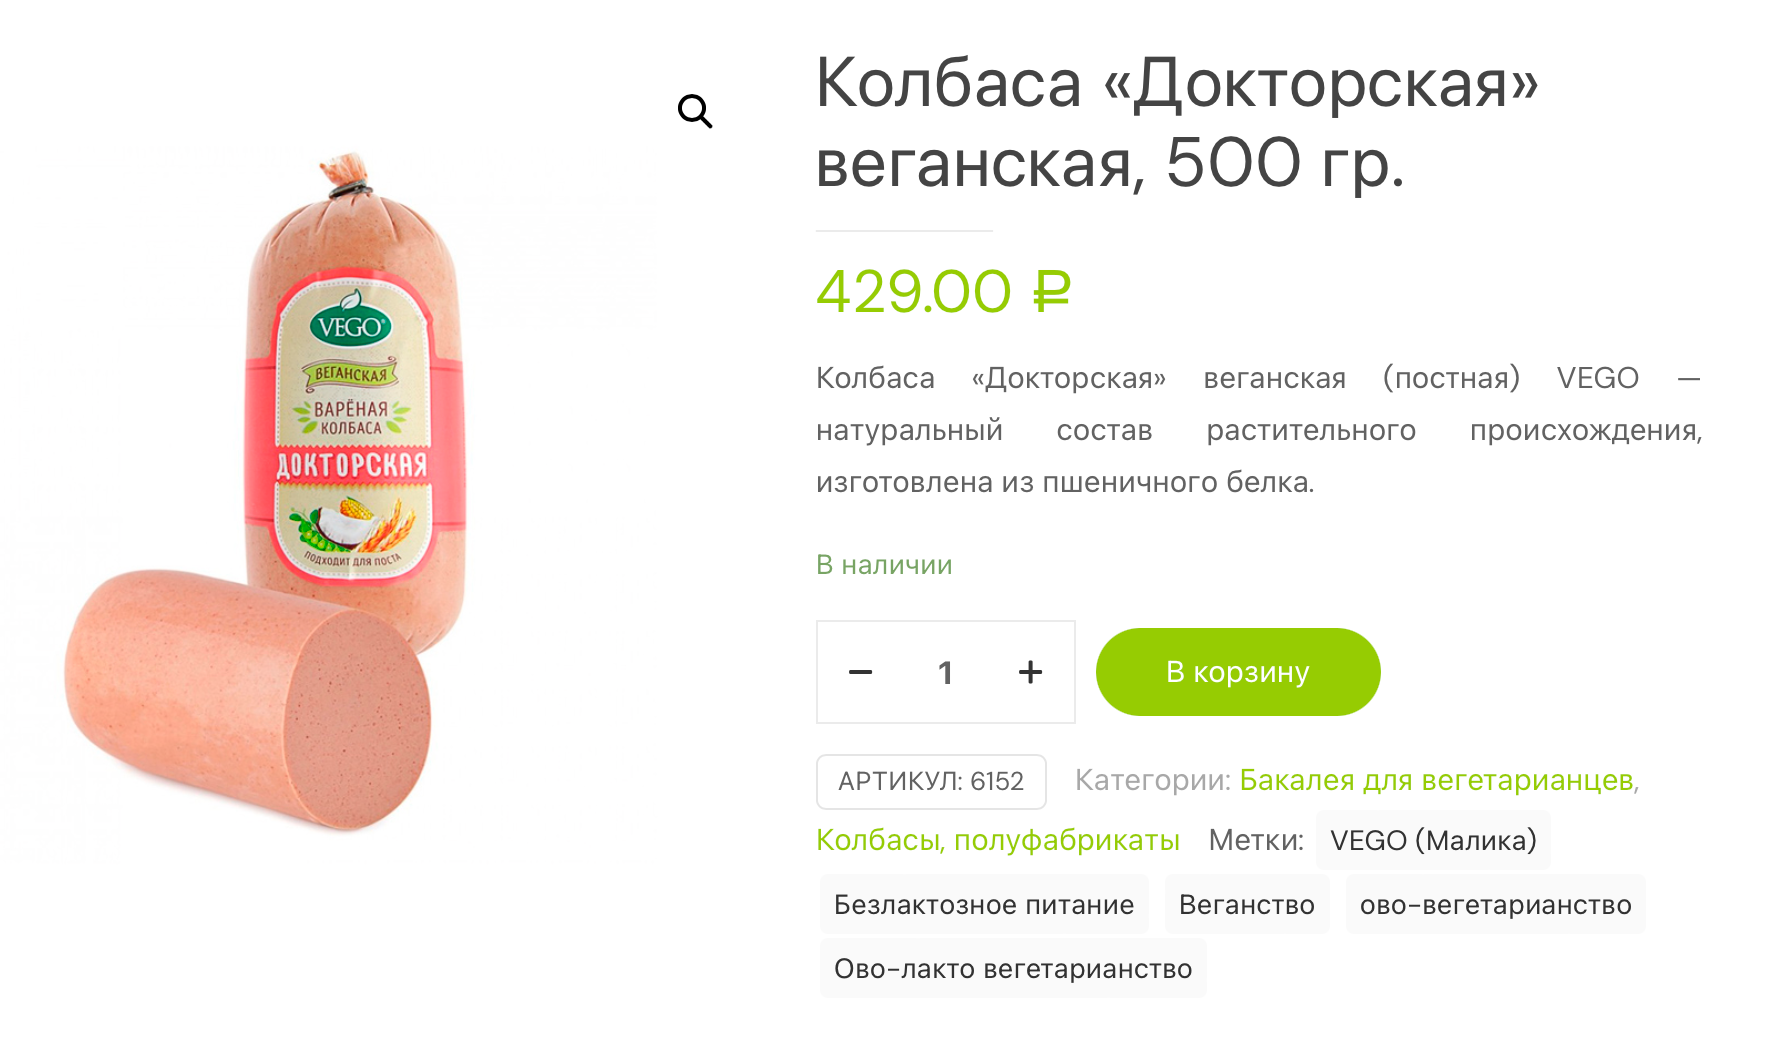 Докторская колбаса из пшеничного и соевого белка в ростовском «Веган-шопе» стоит 429 ₽ за 500 г